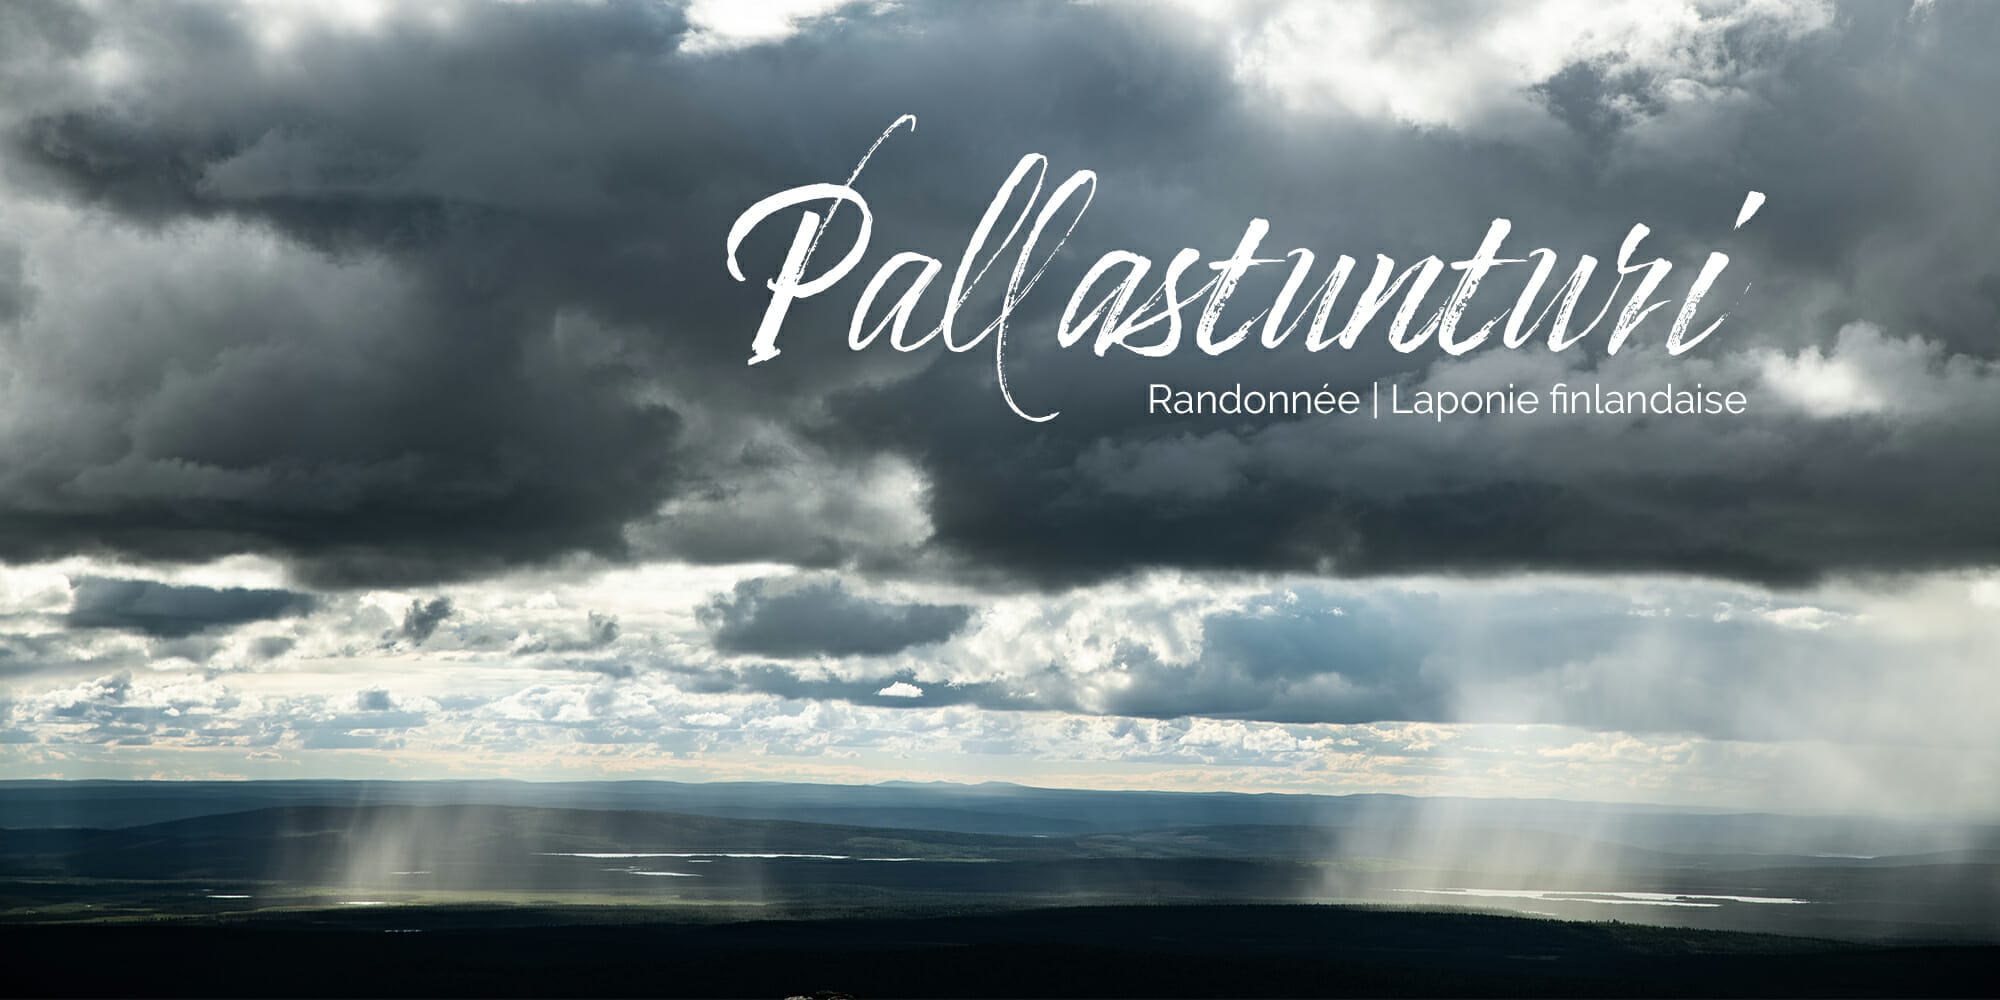 Randonnée au coeur de Pallastuntunri en Laponie finlandaise